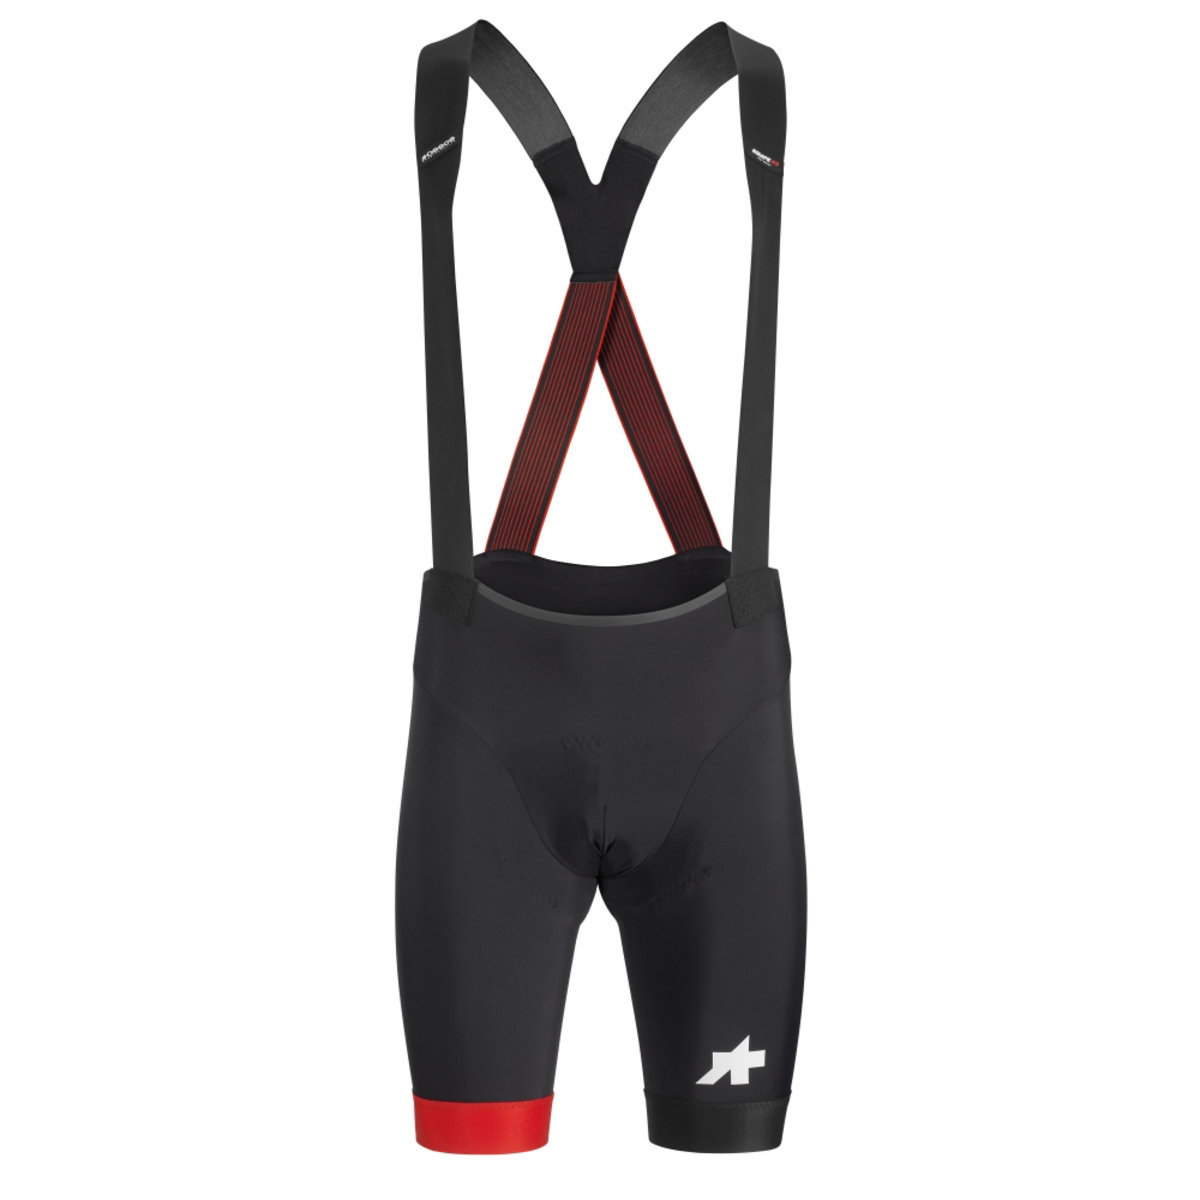 Велотрусы ASSOS Equipe RS Bib Shorts S9 National Red, на лямках, мужские, черные с красным, S